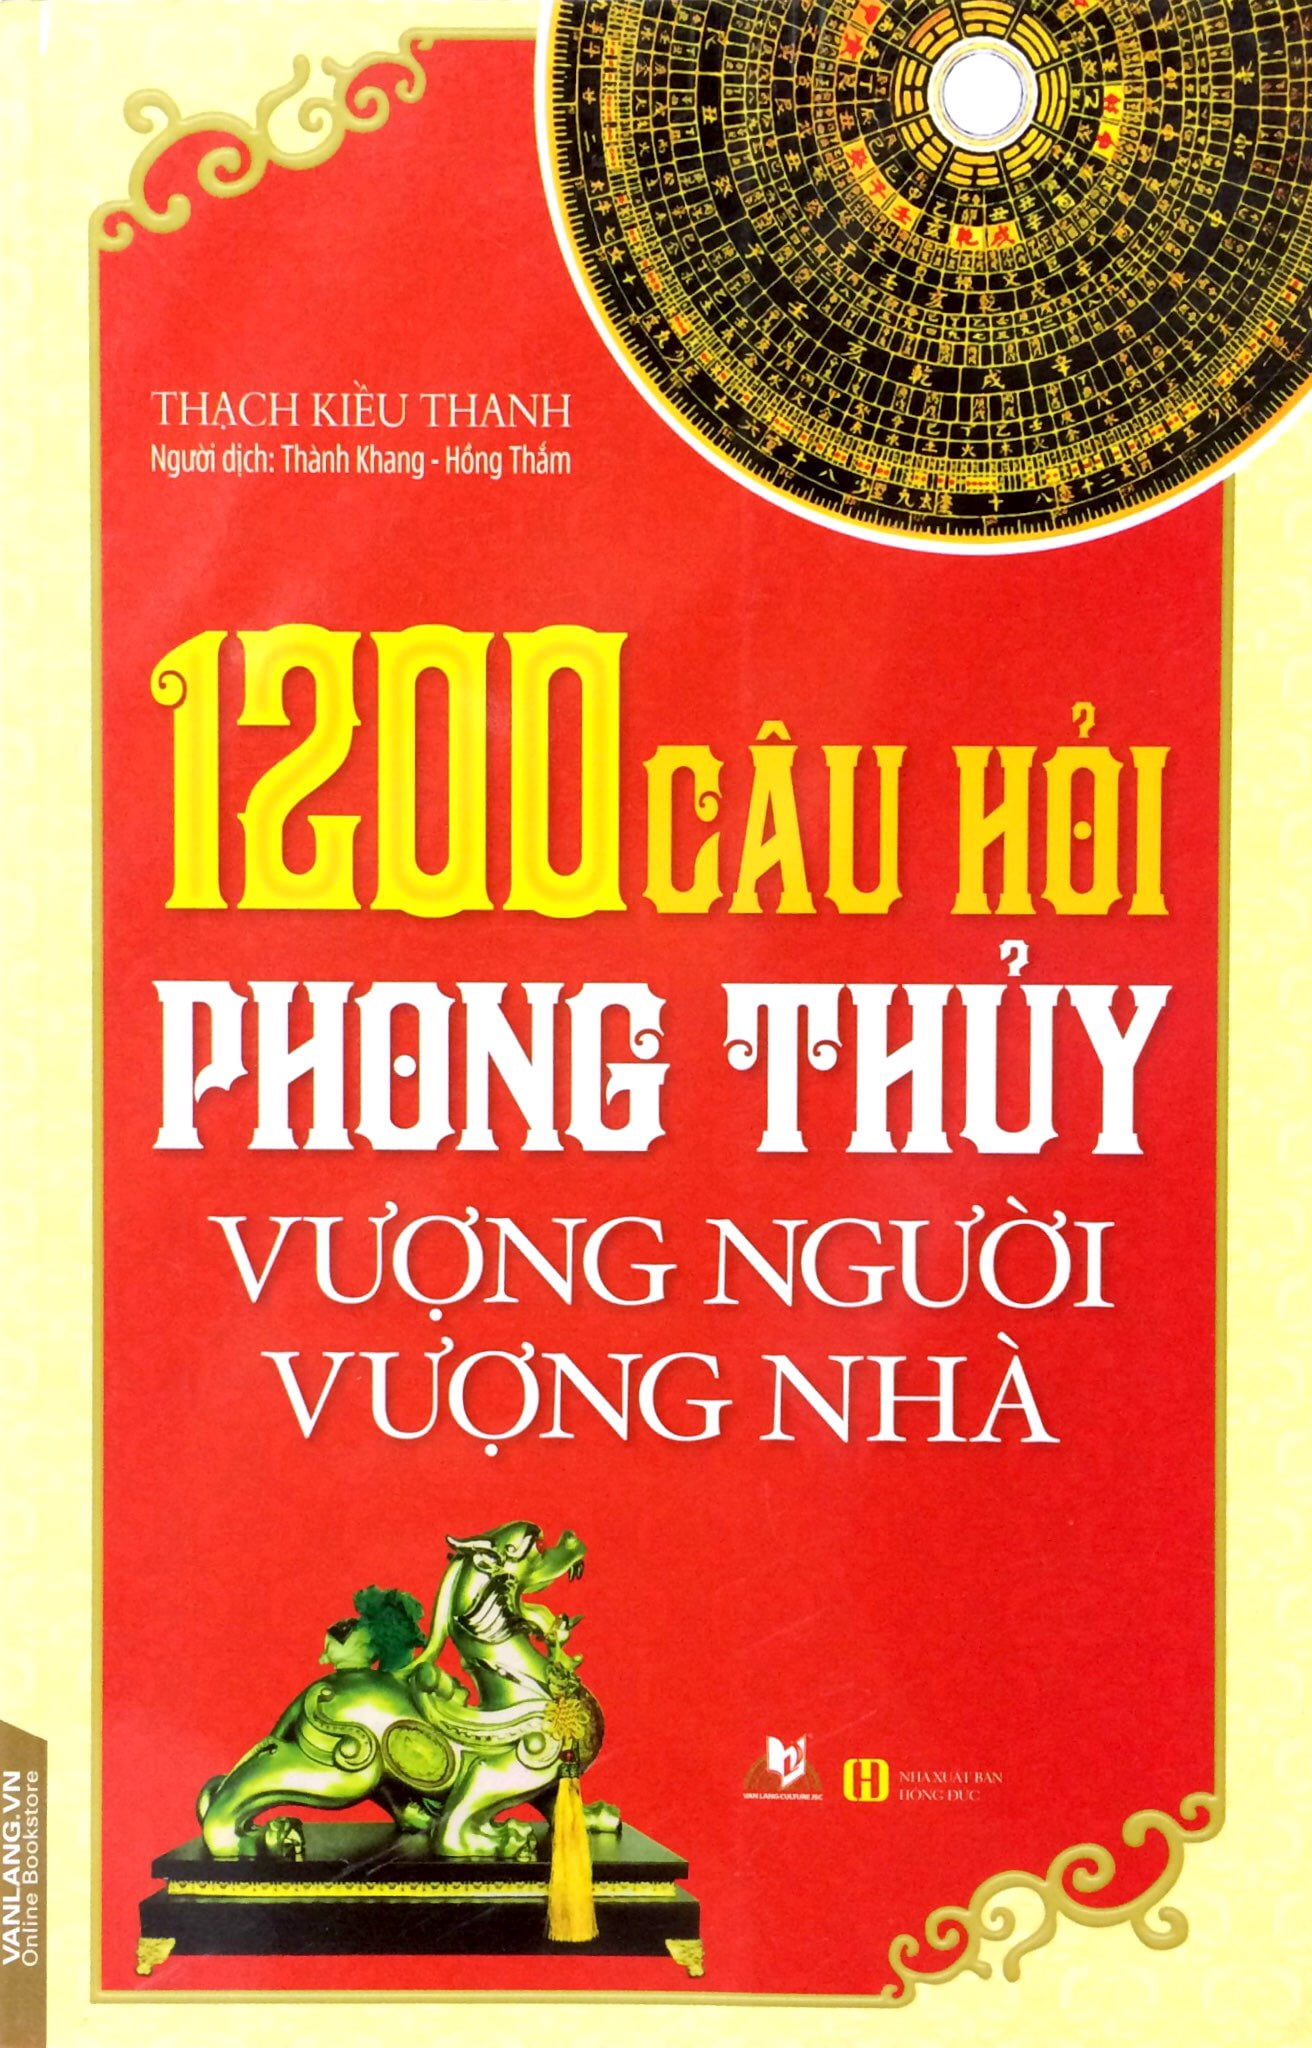 1200 Câu Hỏi Phong Thủy Vượng Người, Vượng Nhà - Thạch Kiều Thanh - Vanlangbooks